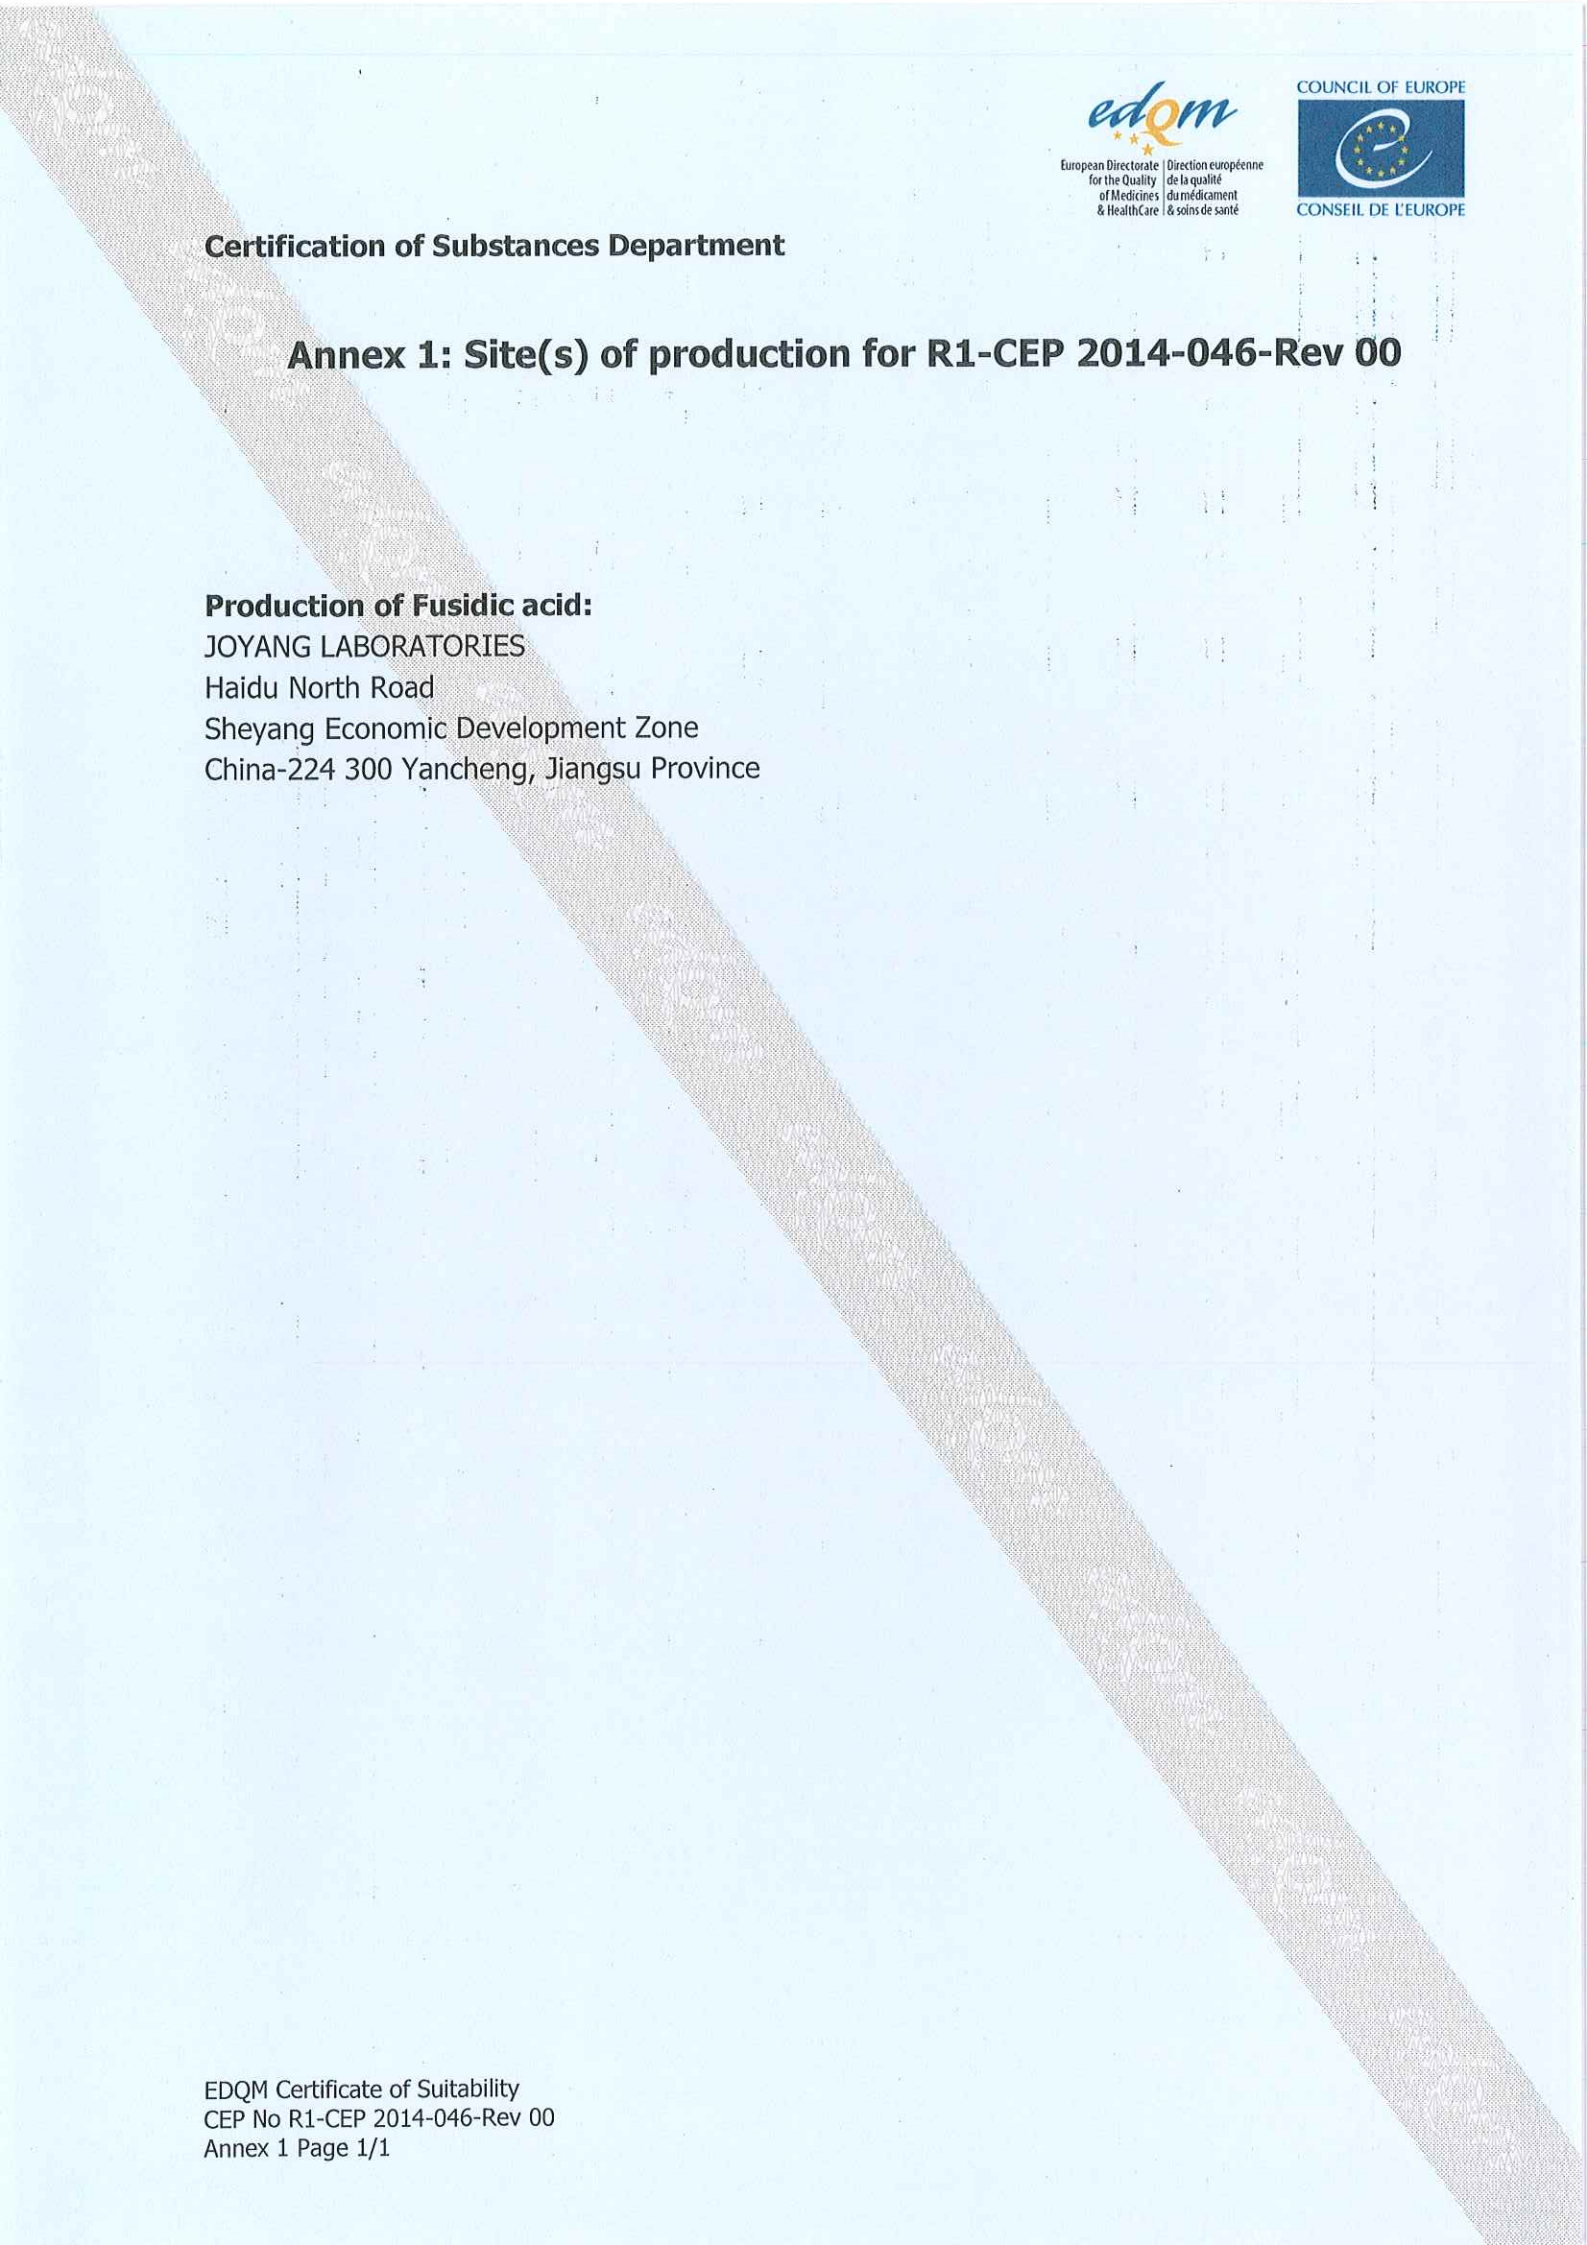 夫西地酸CEP證書20200625永久性_02